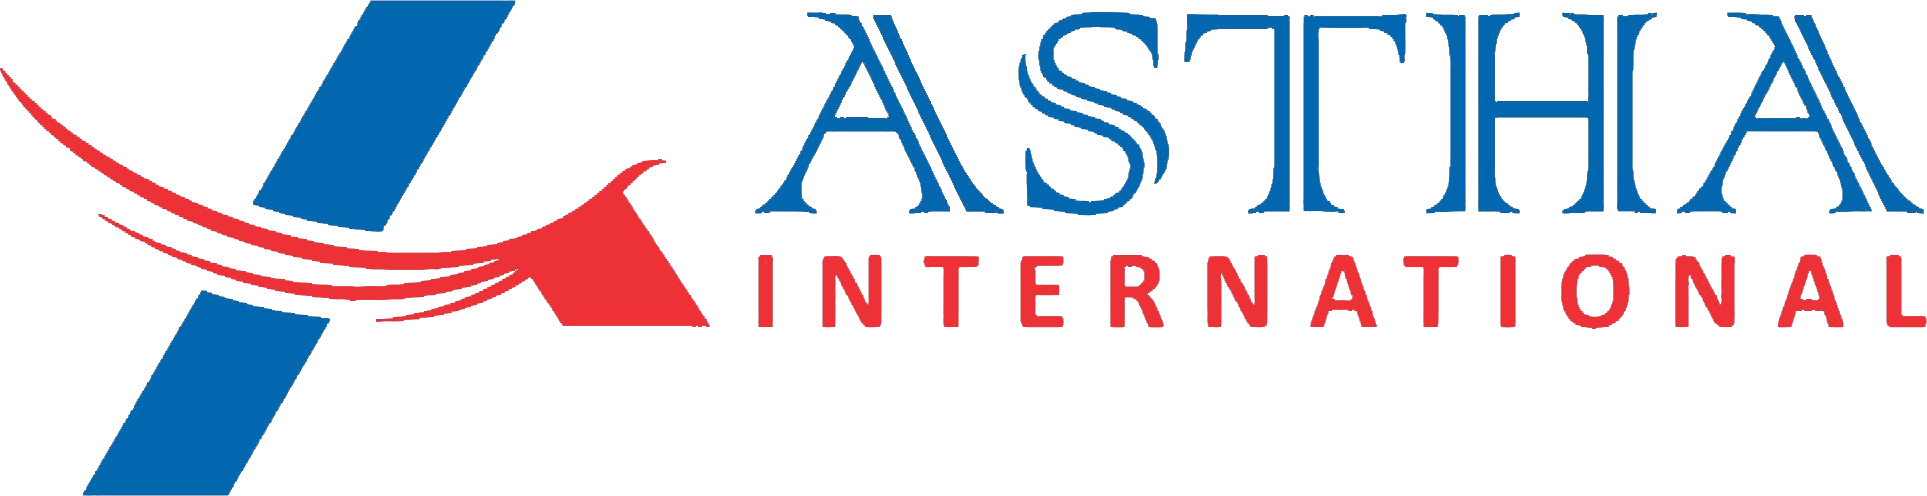 Astha International